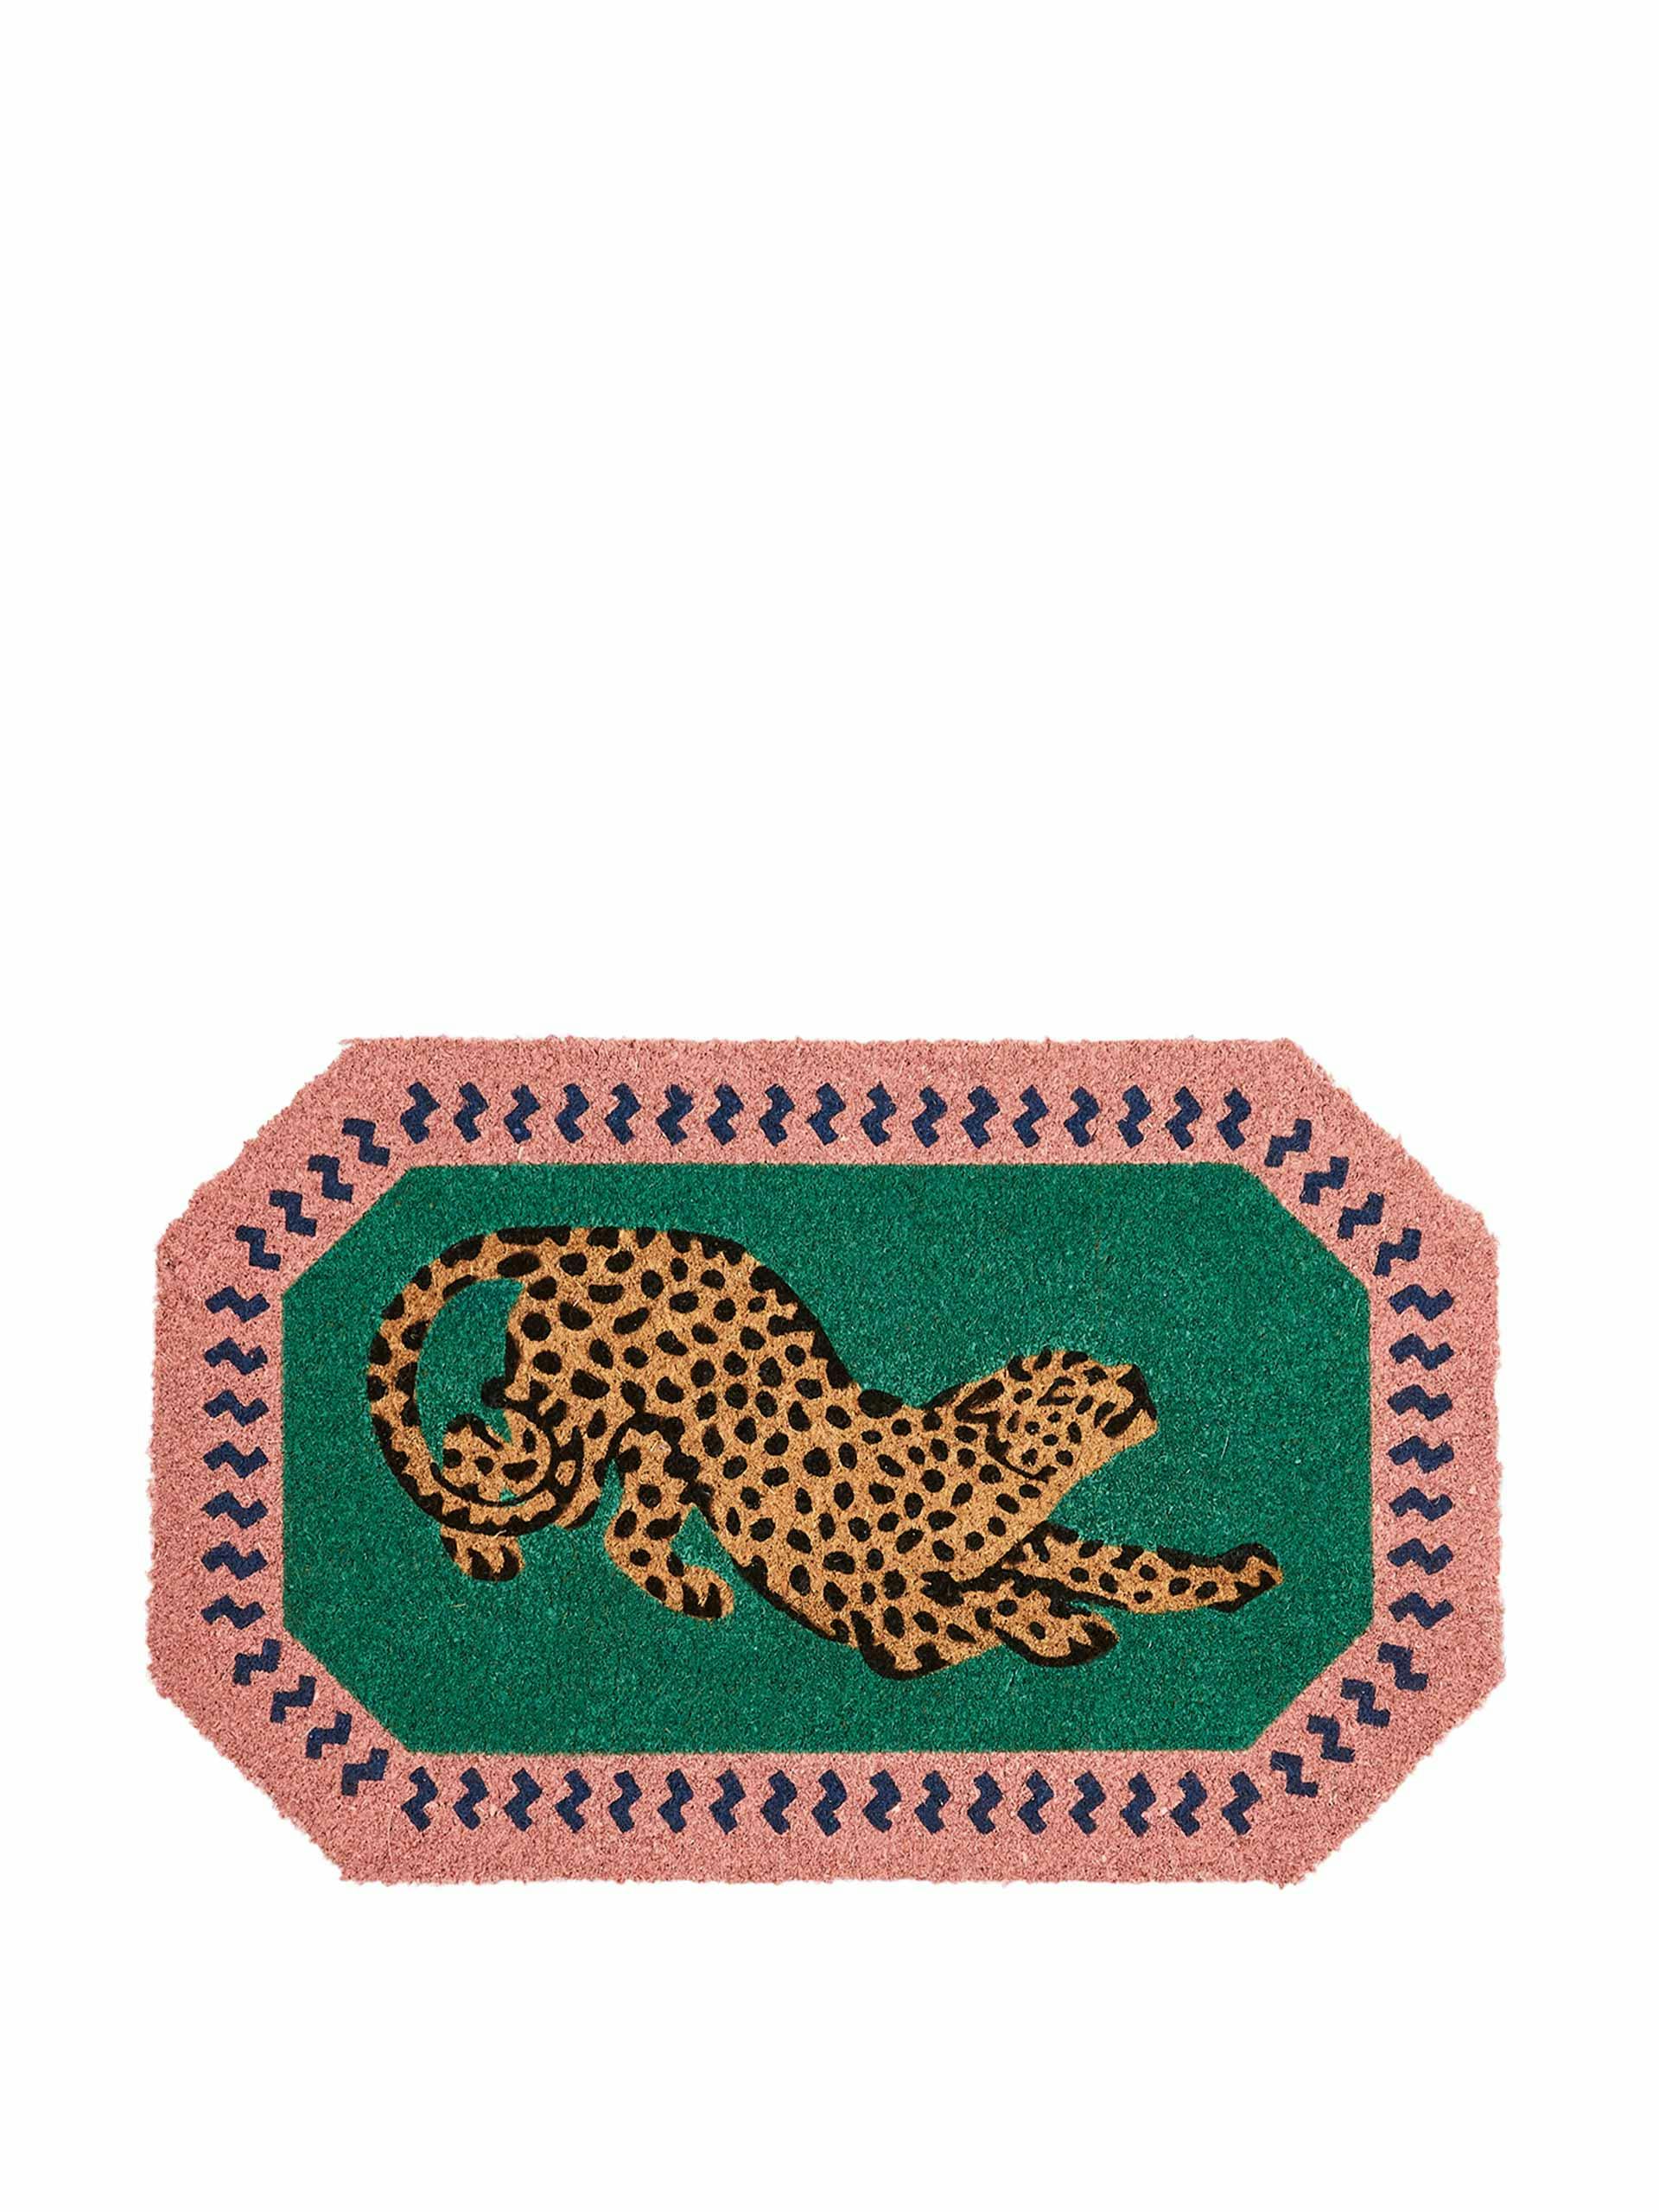 Leopard green & pink doormat